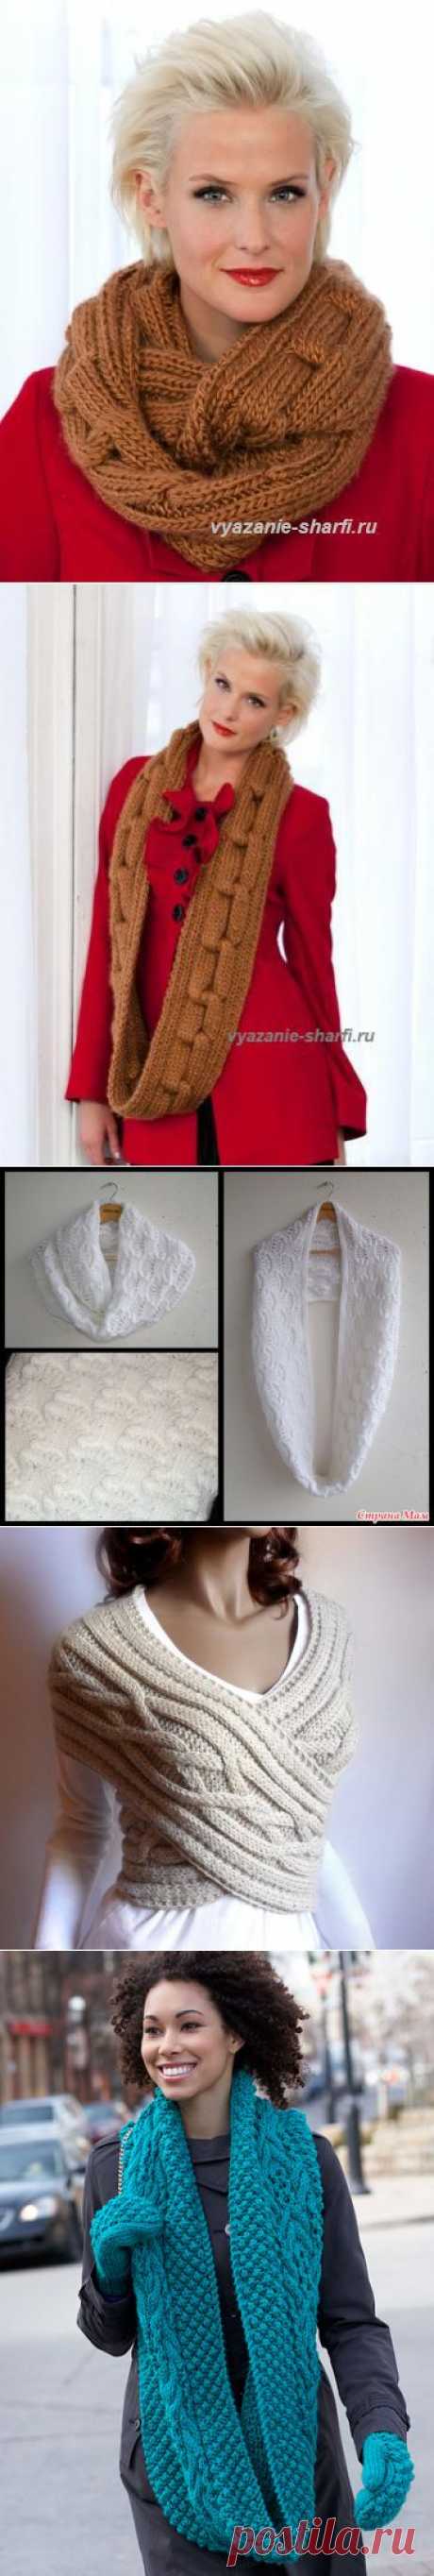 Теплый снуд. 3 варианта для вязания - Рукоделие